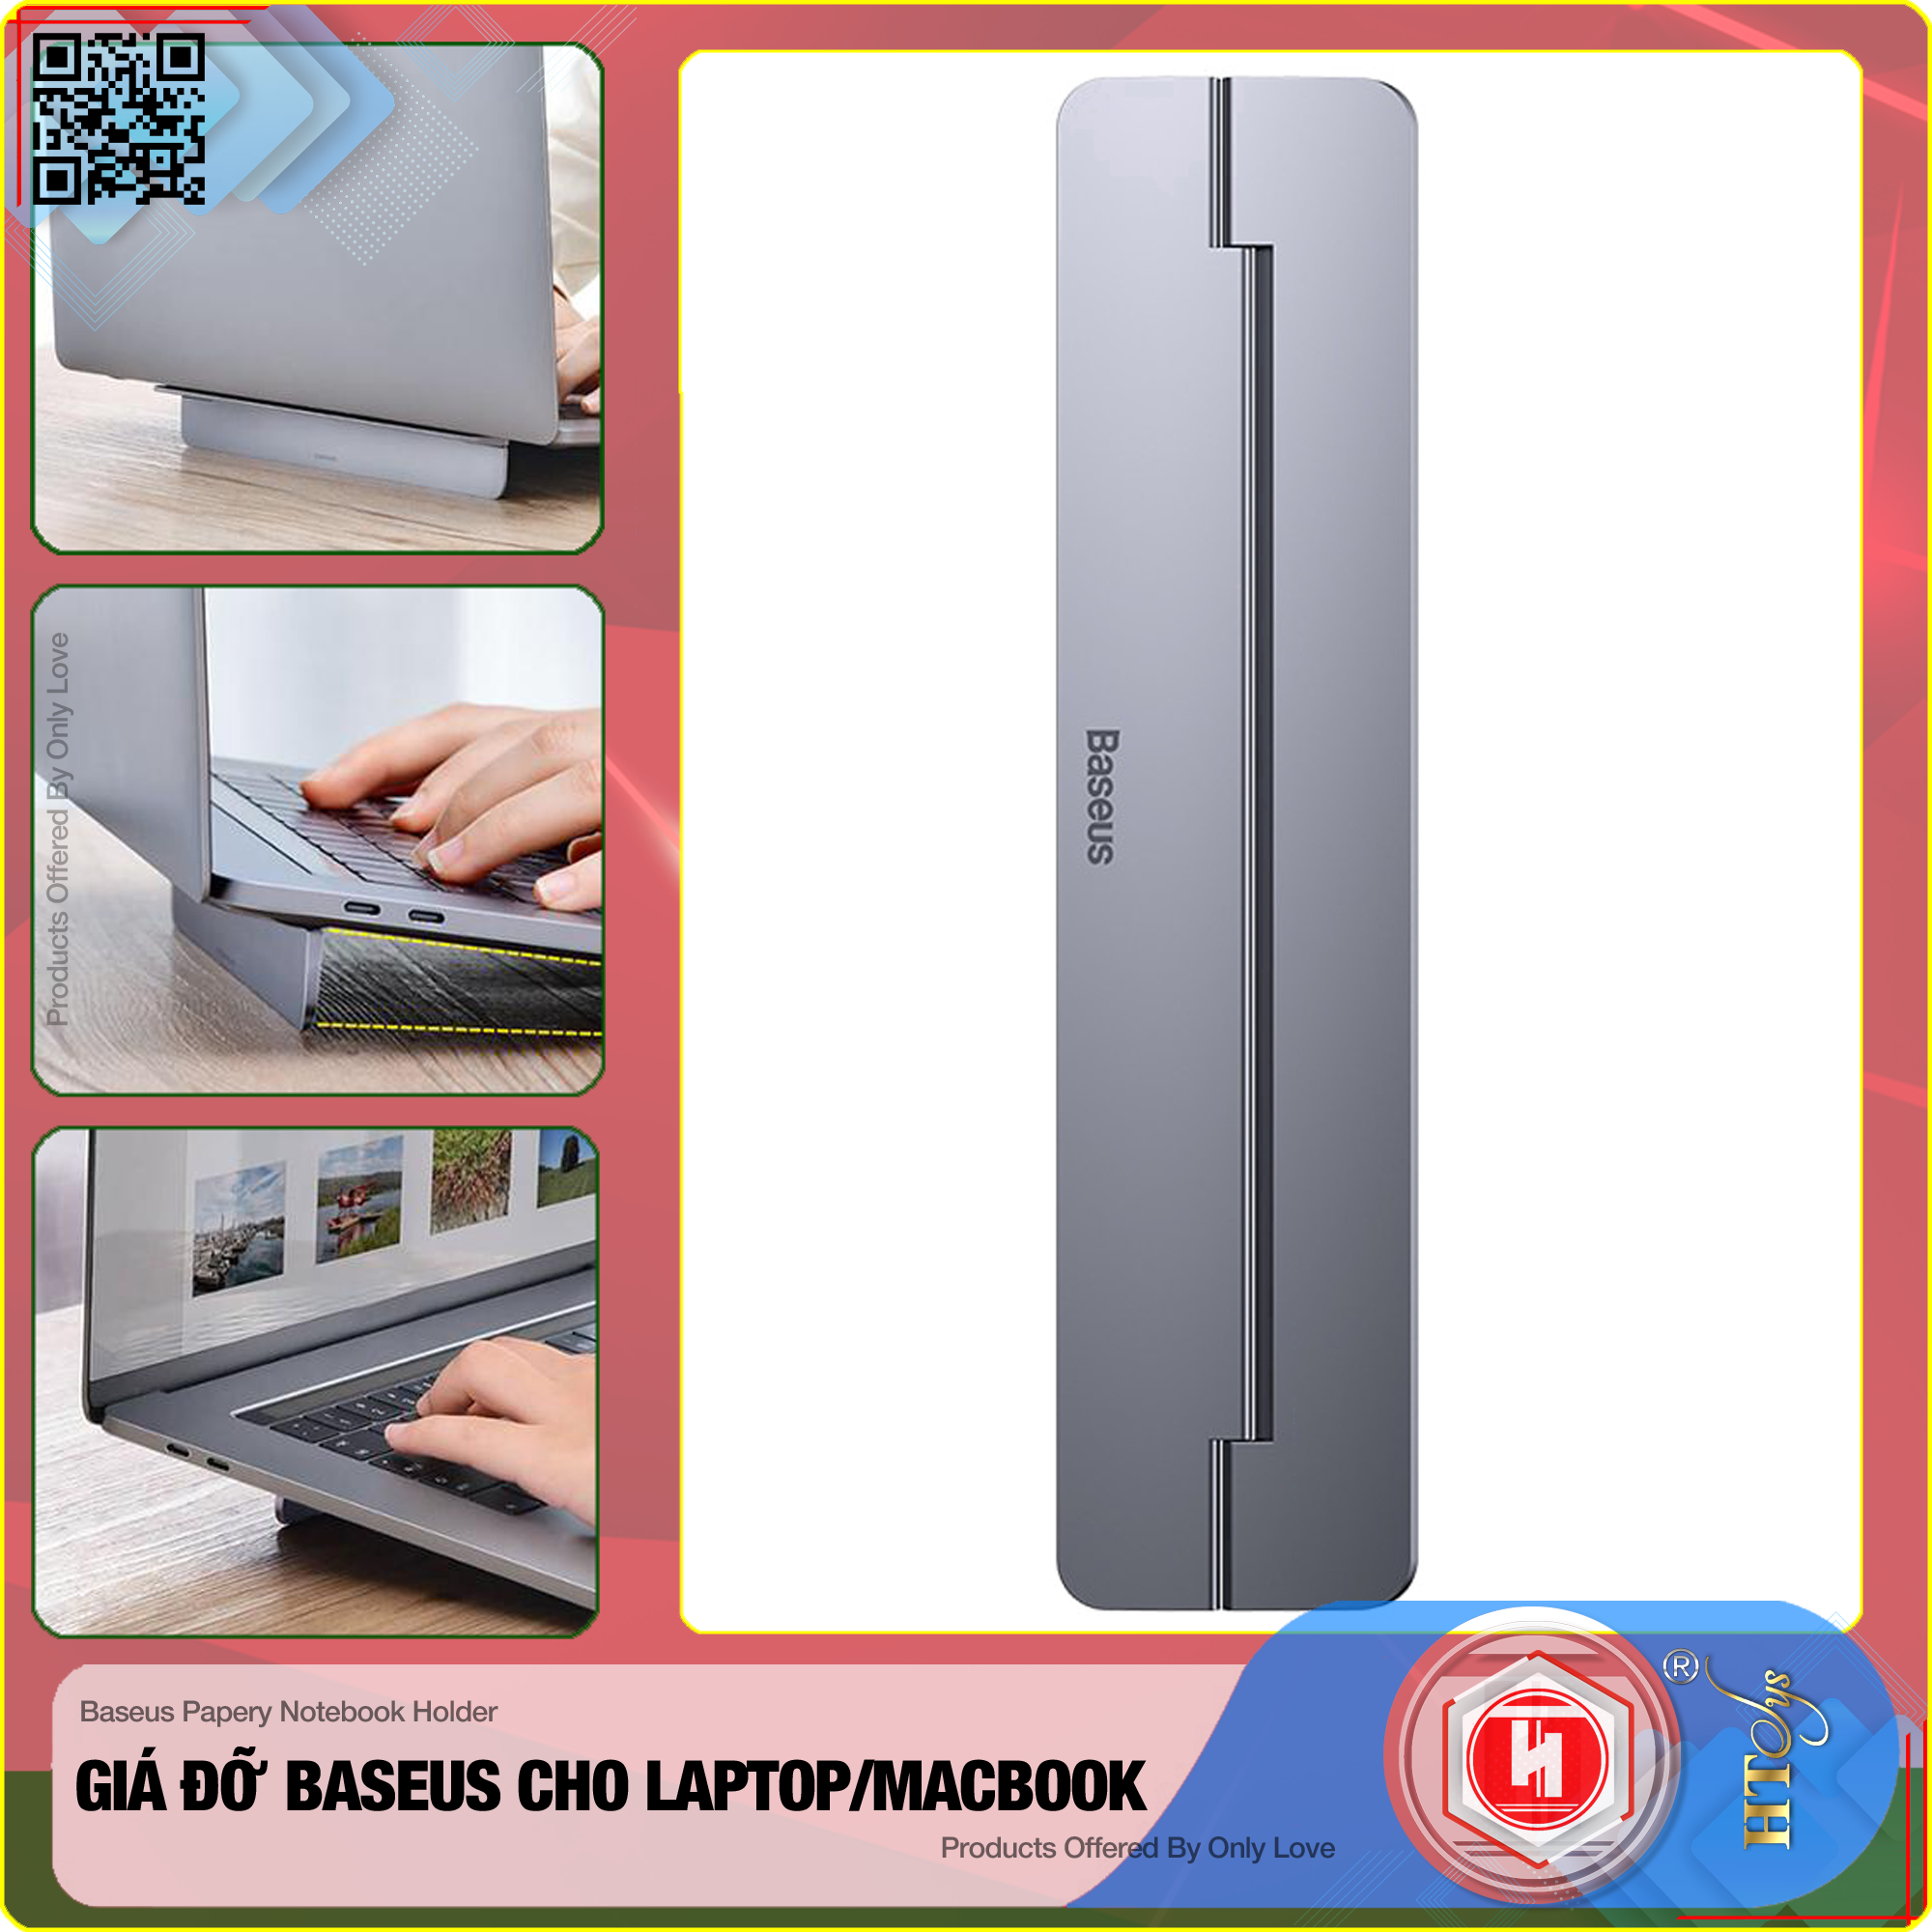 Đế tản nhiệt dạng xếp, siêu mỏng Baseus Papery Notebook Holder dùng cho cho Macbook/ Laptop (0.3cm slim, 8° Angle, Foldable, Portable Alloy Laptop Stand)